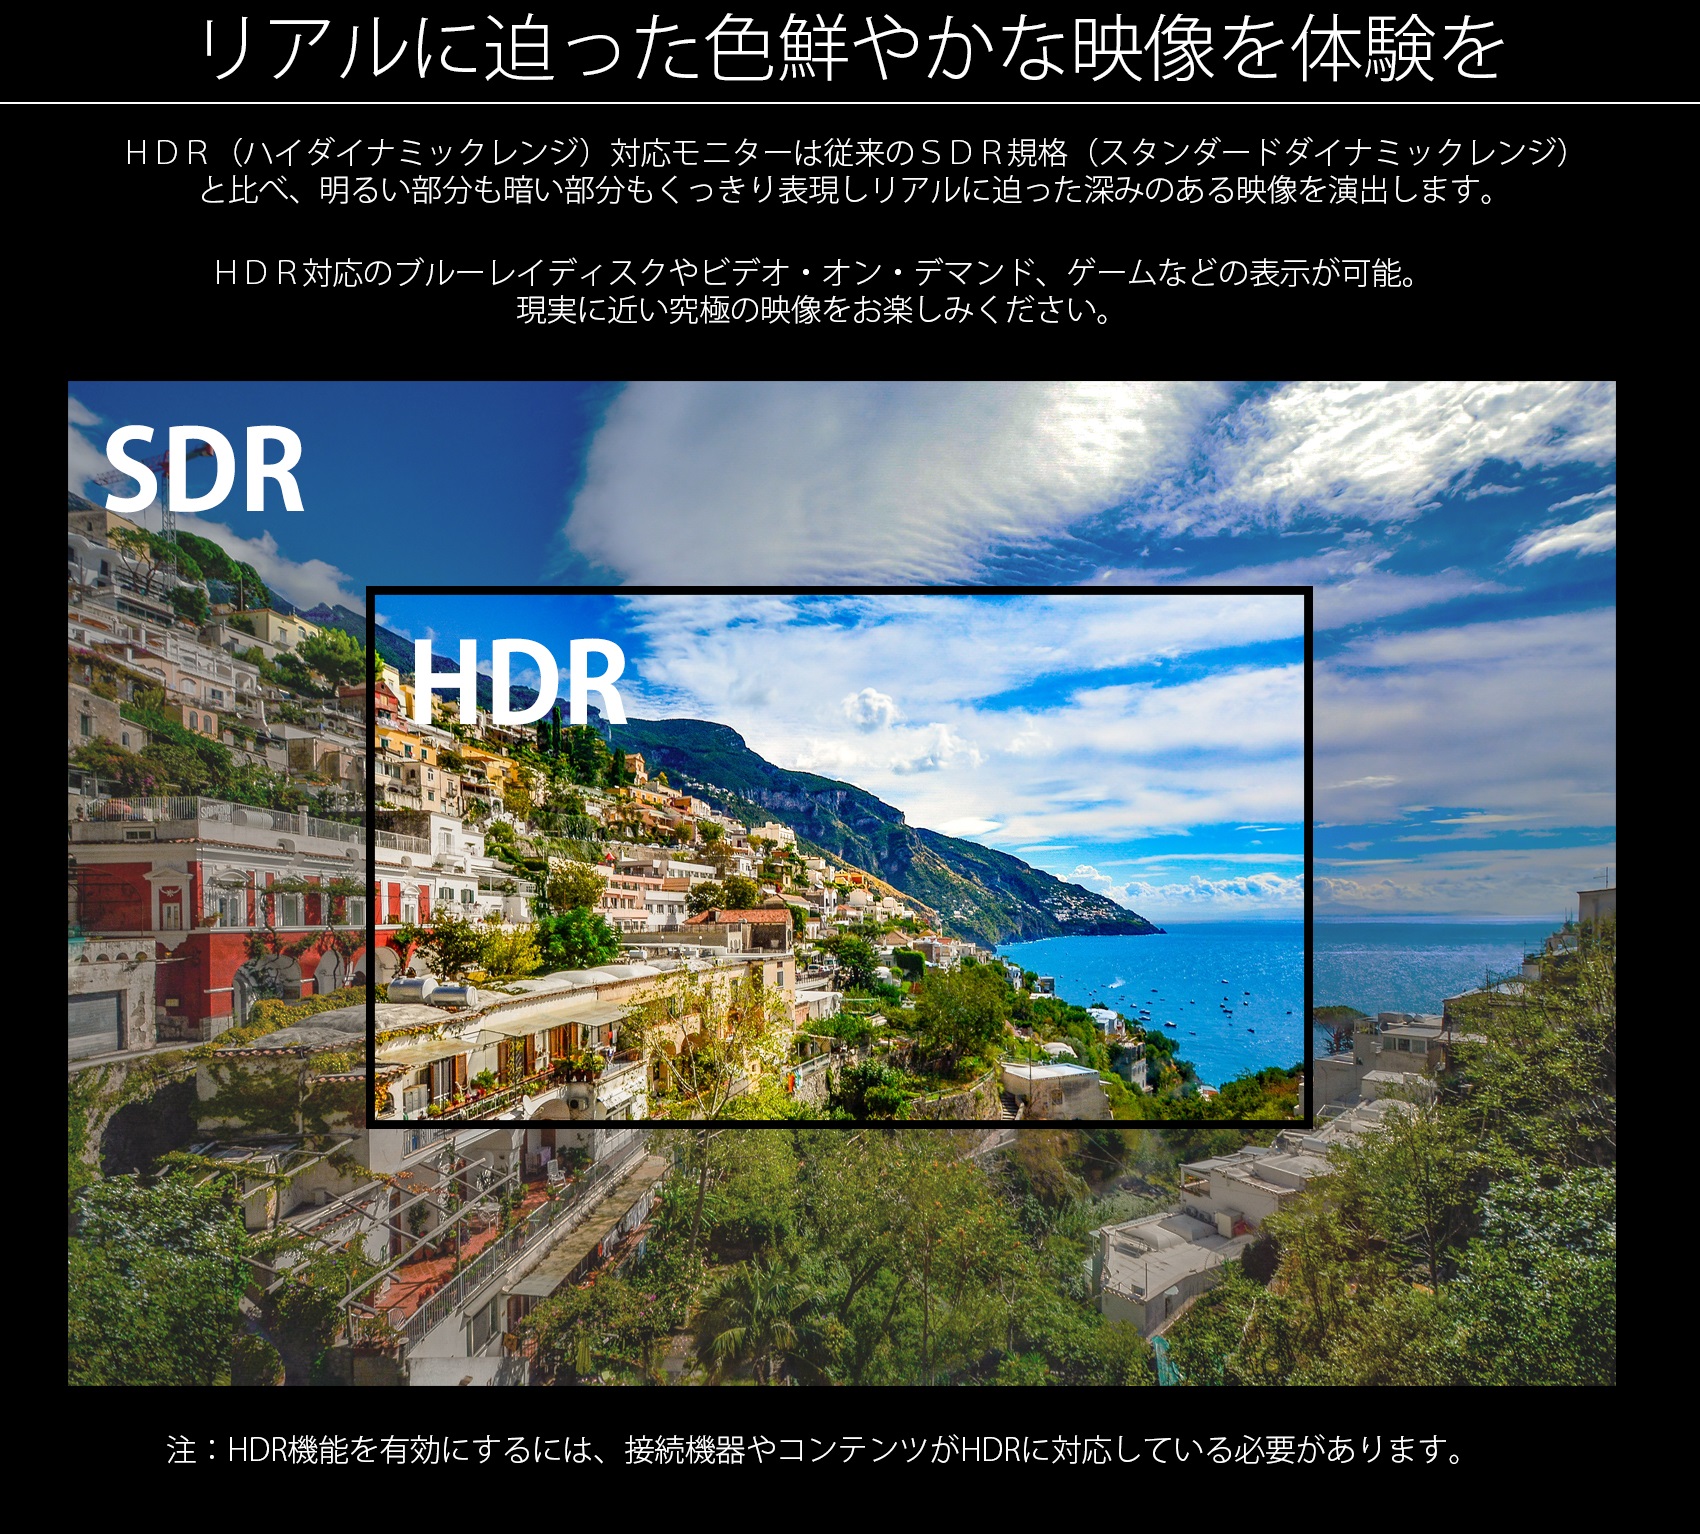 JAPANNEXT JN-VT5001UHDR (50型 4K UHDディスプレイ/ HDMI2.0 HDCP2.2 